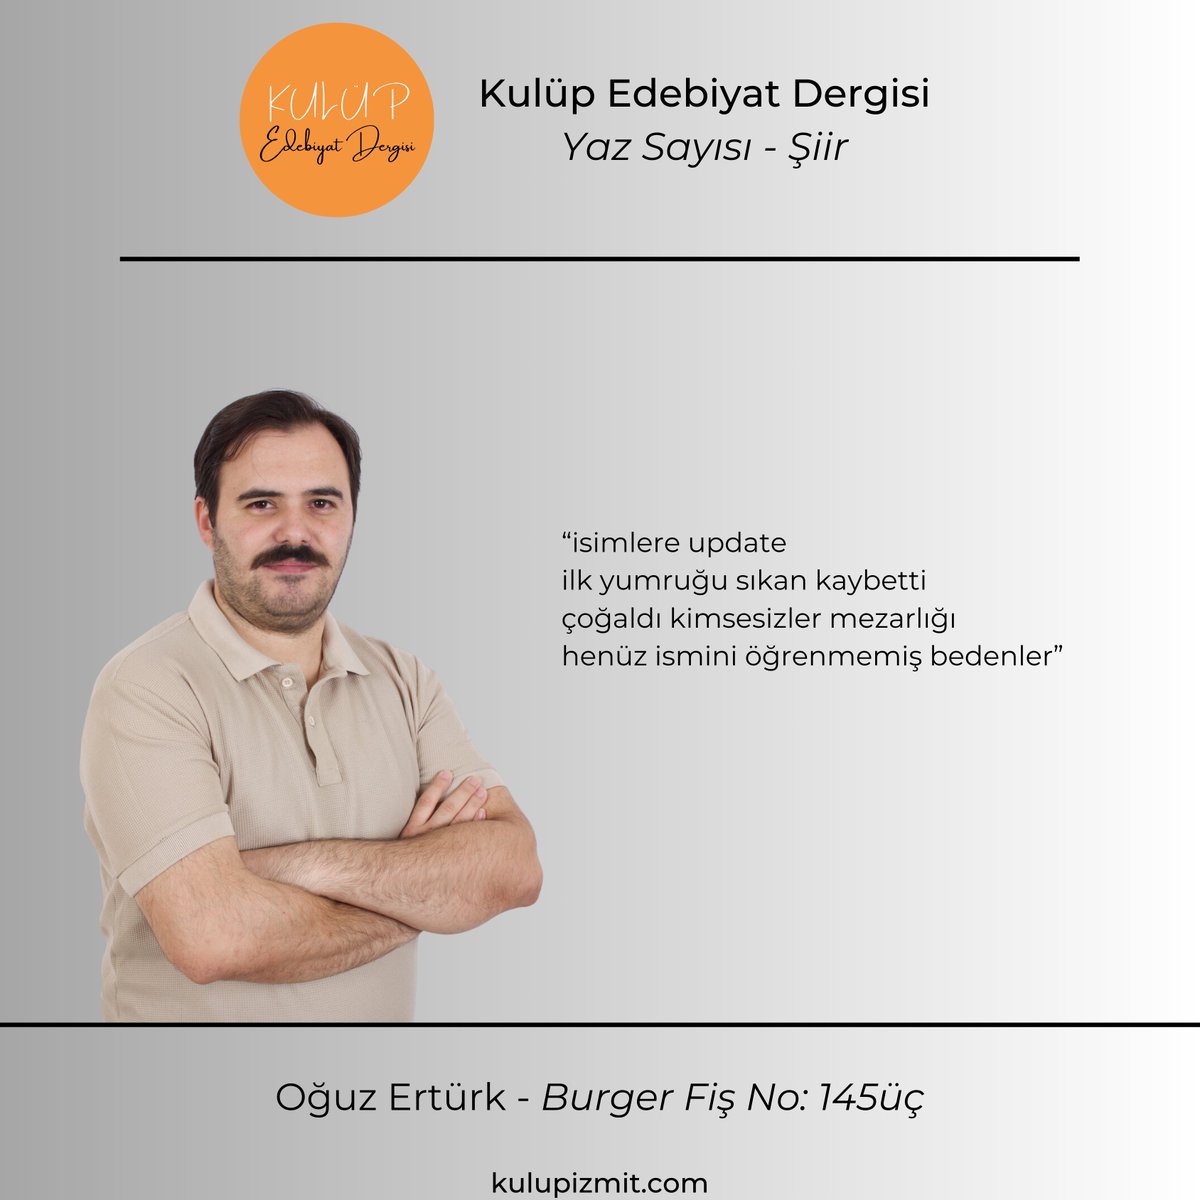 Oğuz Ertürk, 'Burger Fiş No: 145üç' şiiri ile dergimizin yaz sayısında yer aldı. Dergimize link aracılığıyla ulaşabilirsiniz. kulupizmit.com/dergi/